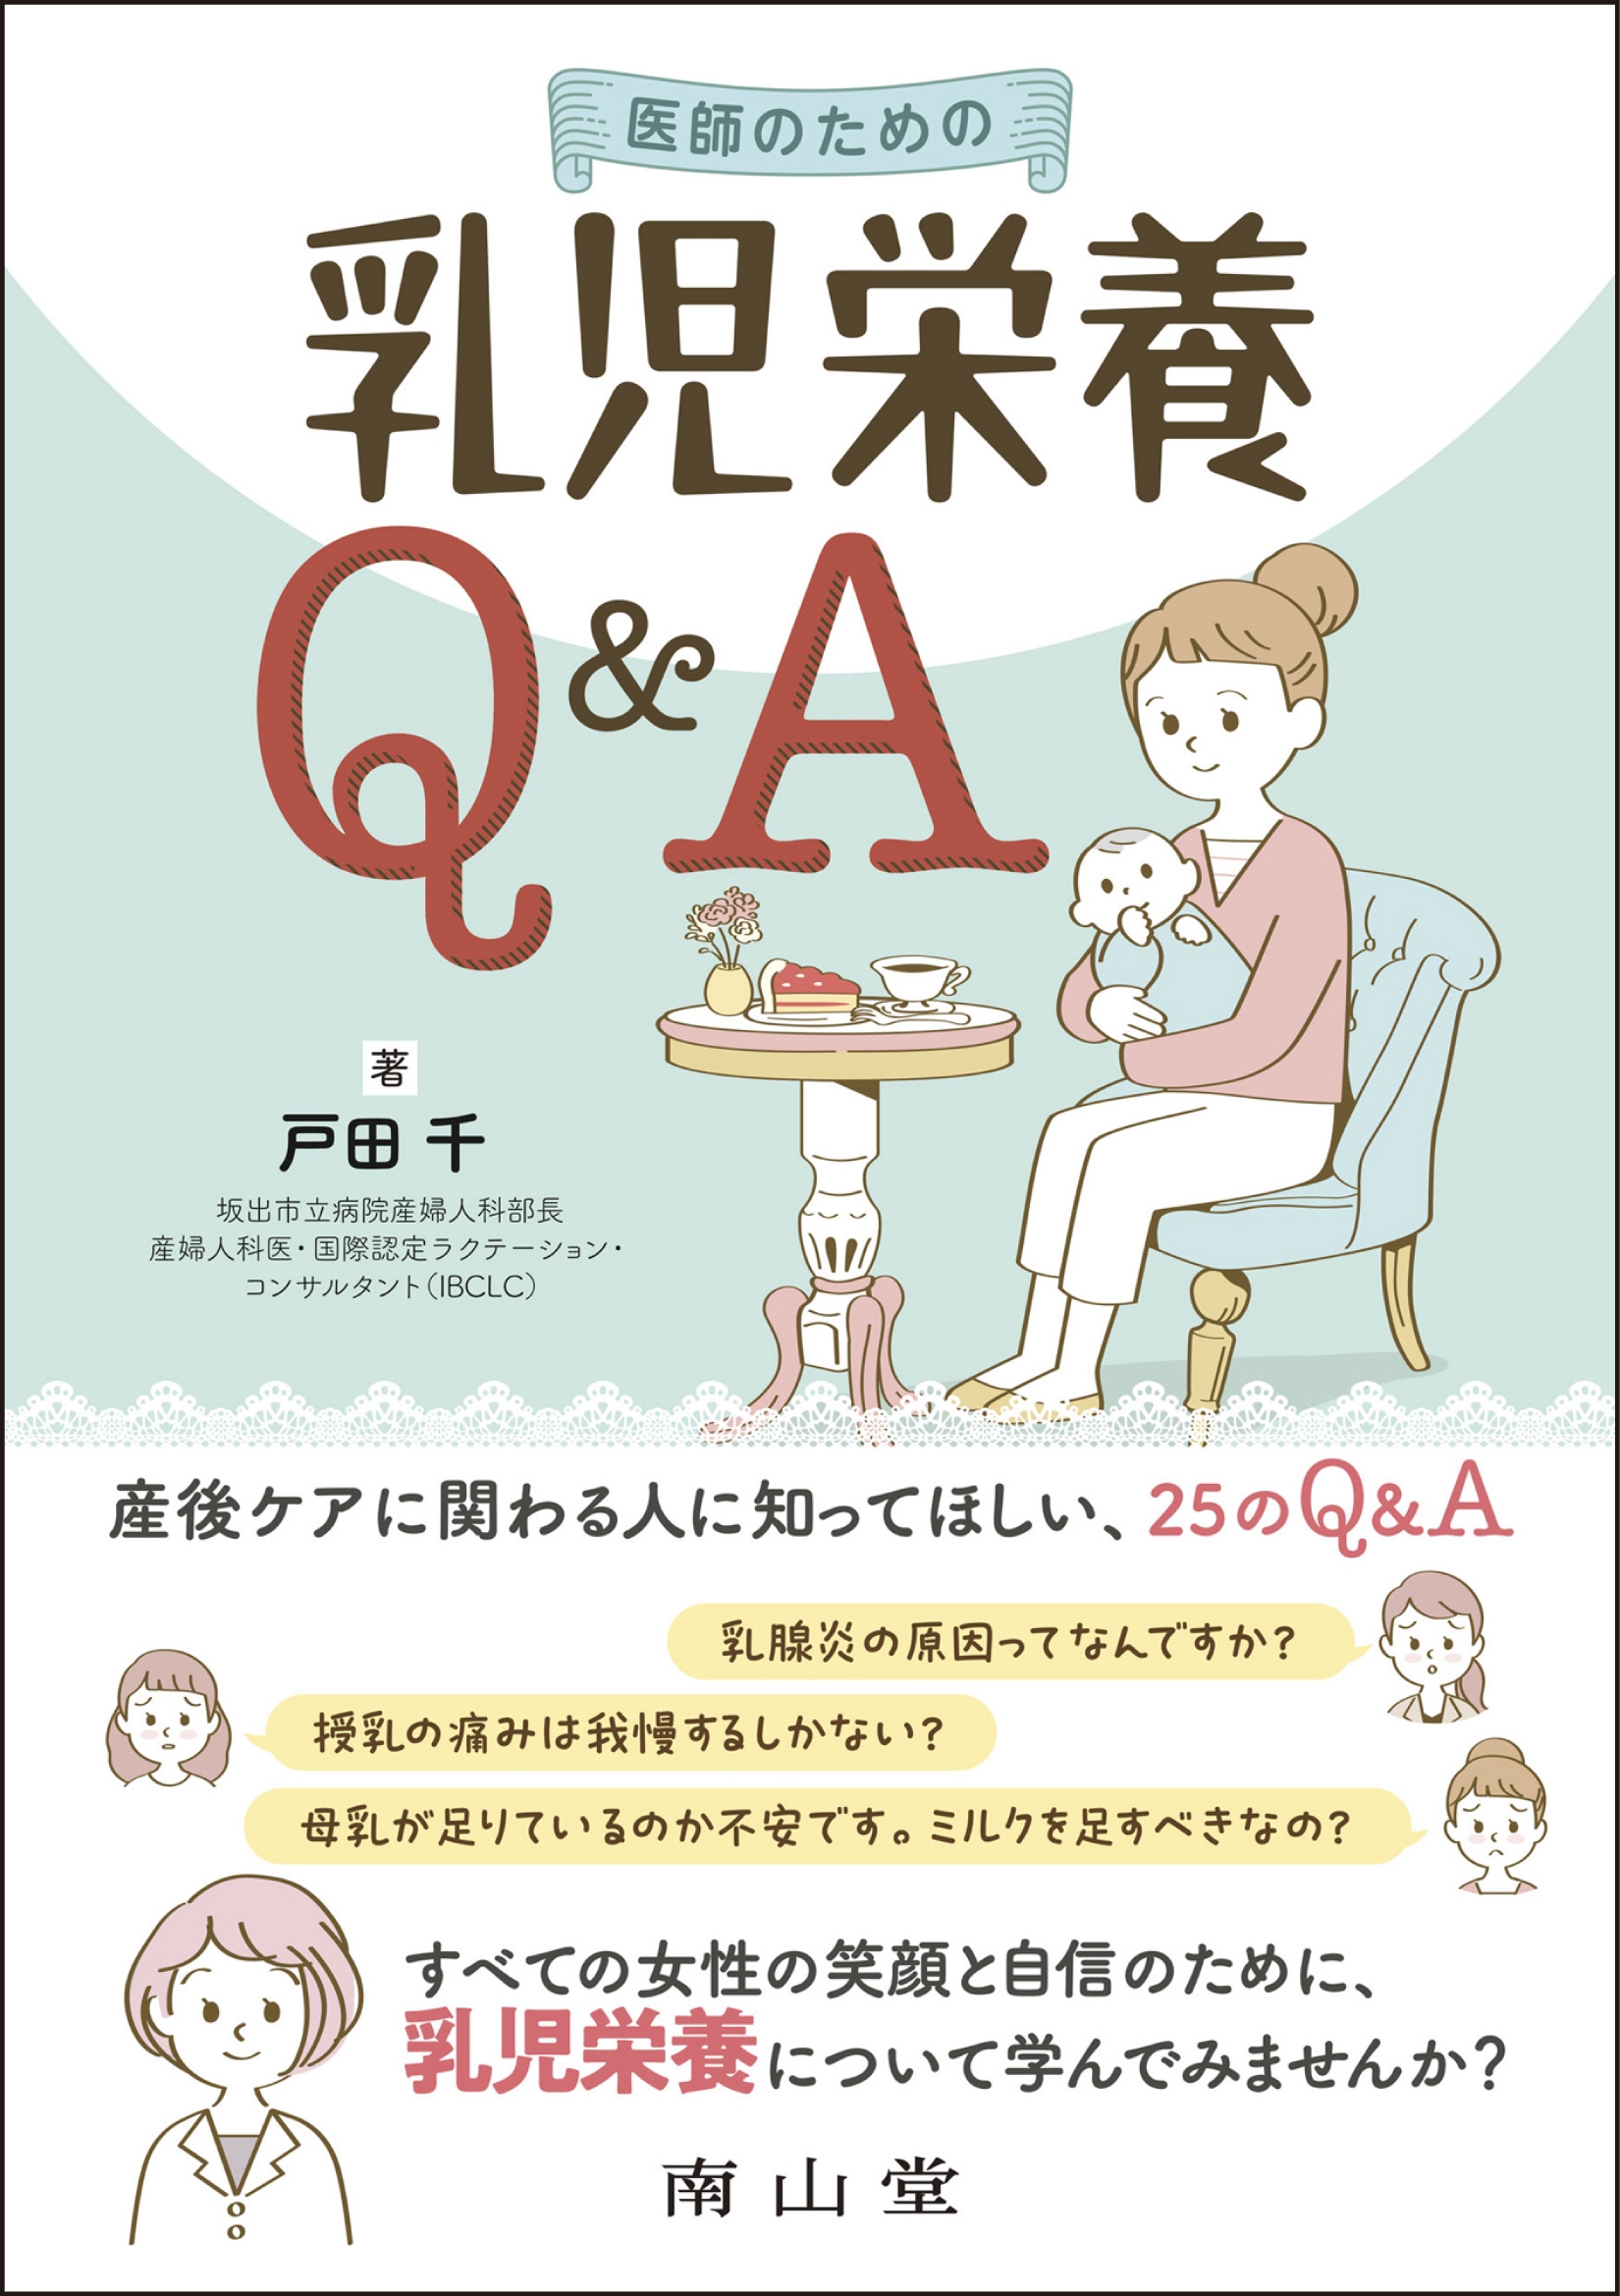 戸田千/医師のための乳児栄養Q&A